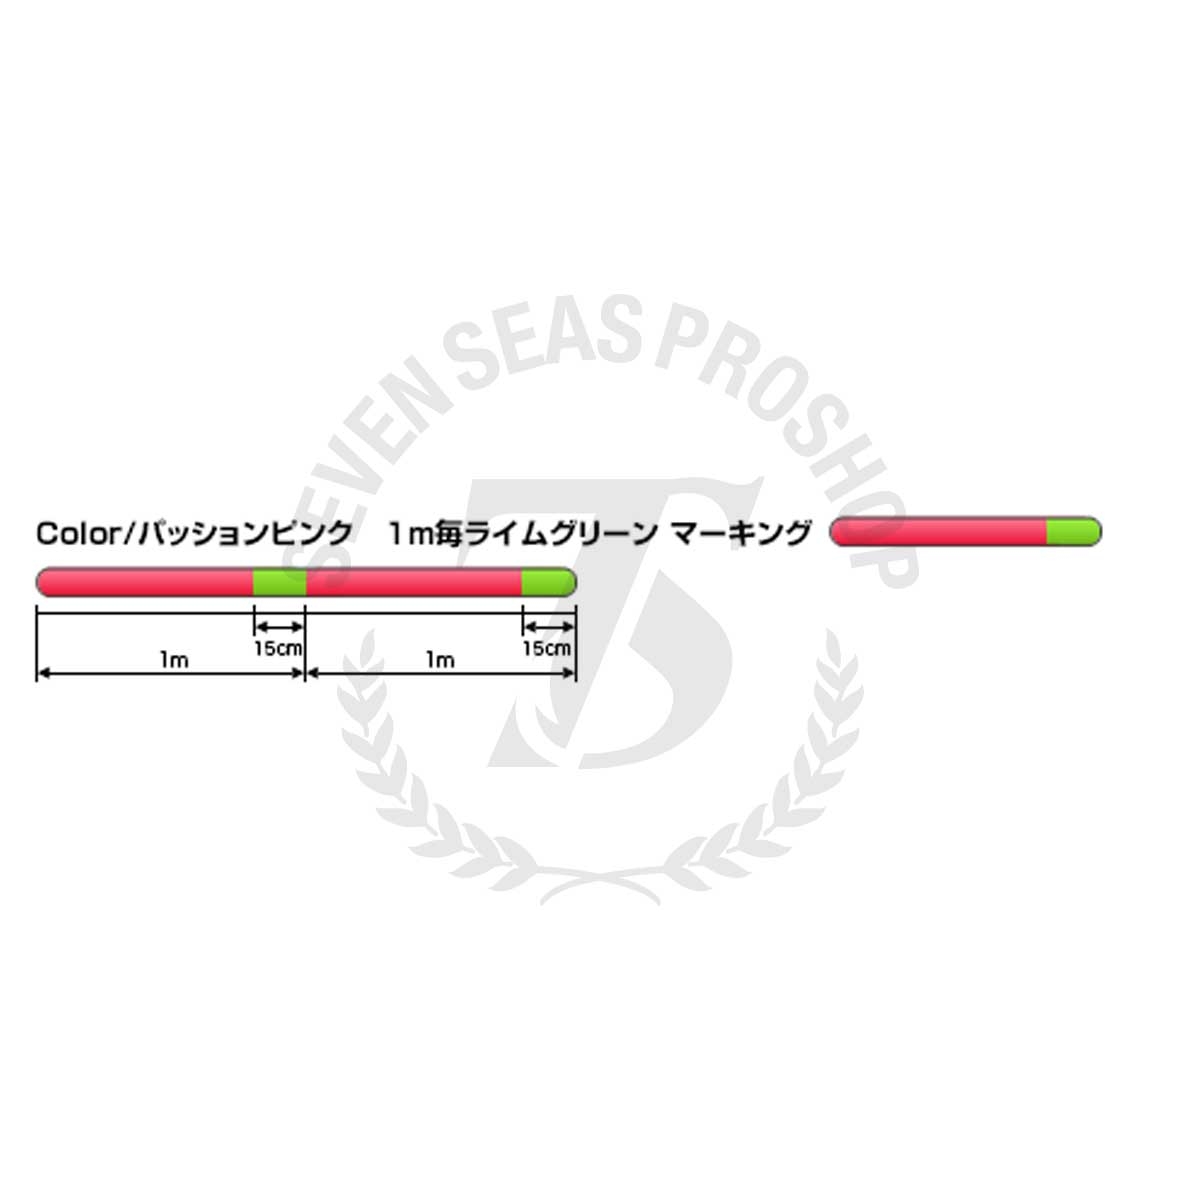 Seaguar Grandmax PE X8 Lure Edition 150m #PE-1.2 (Multi Color)*สายพีอี - 7  SEAS PROSHOP (THAILAND)